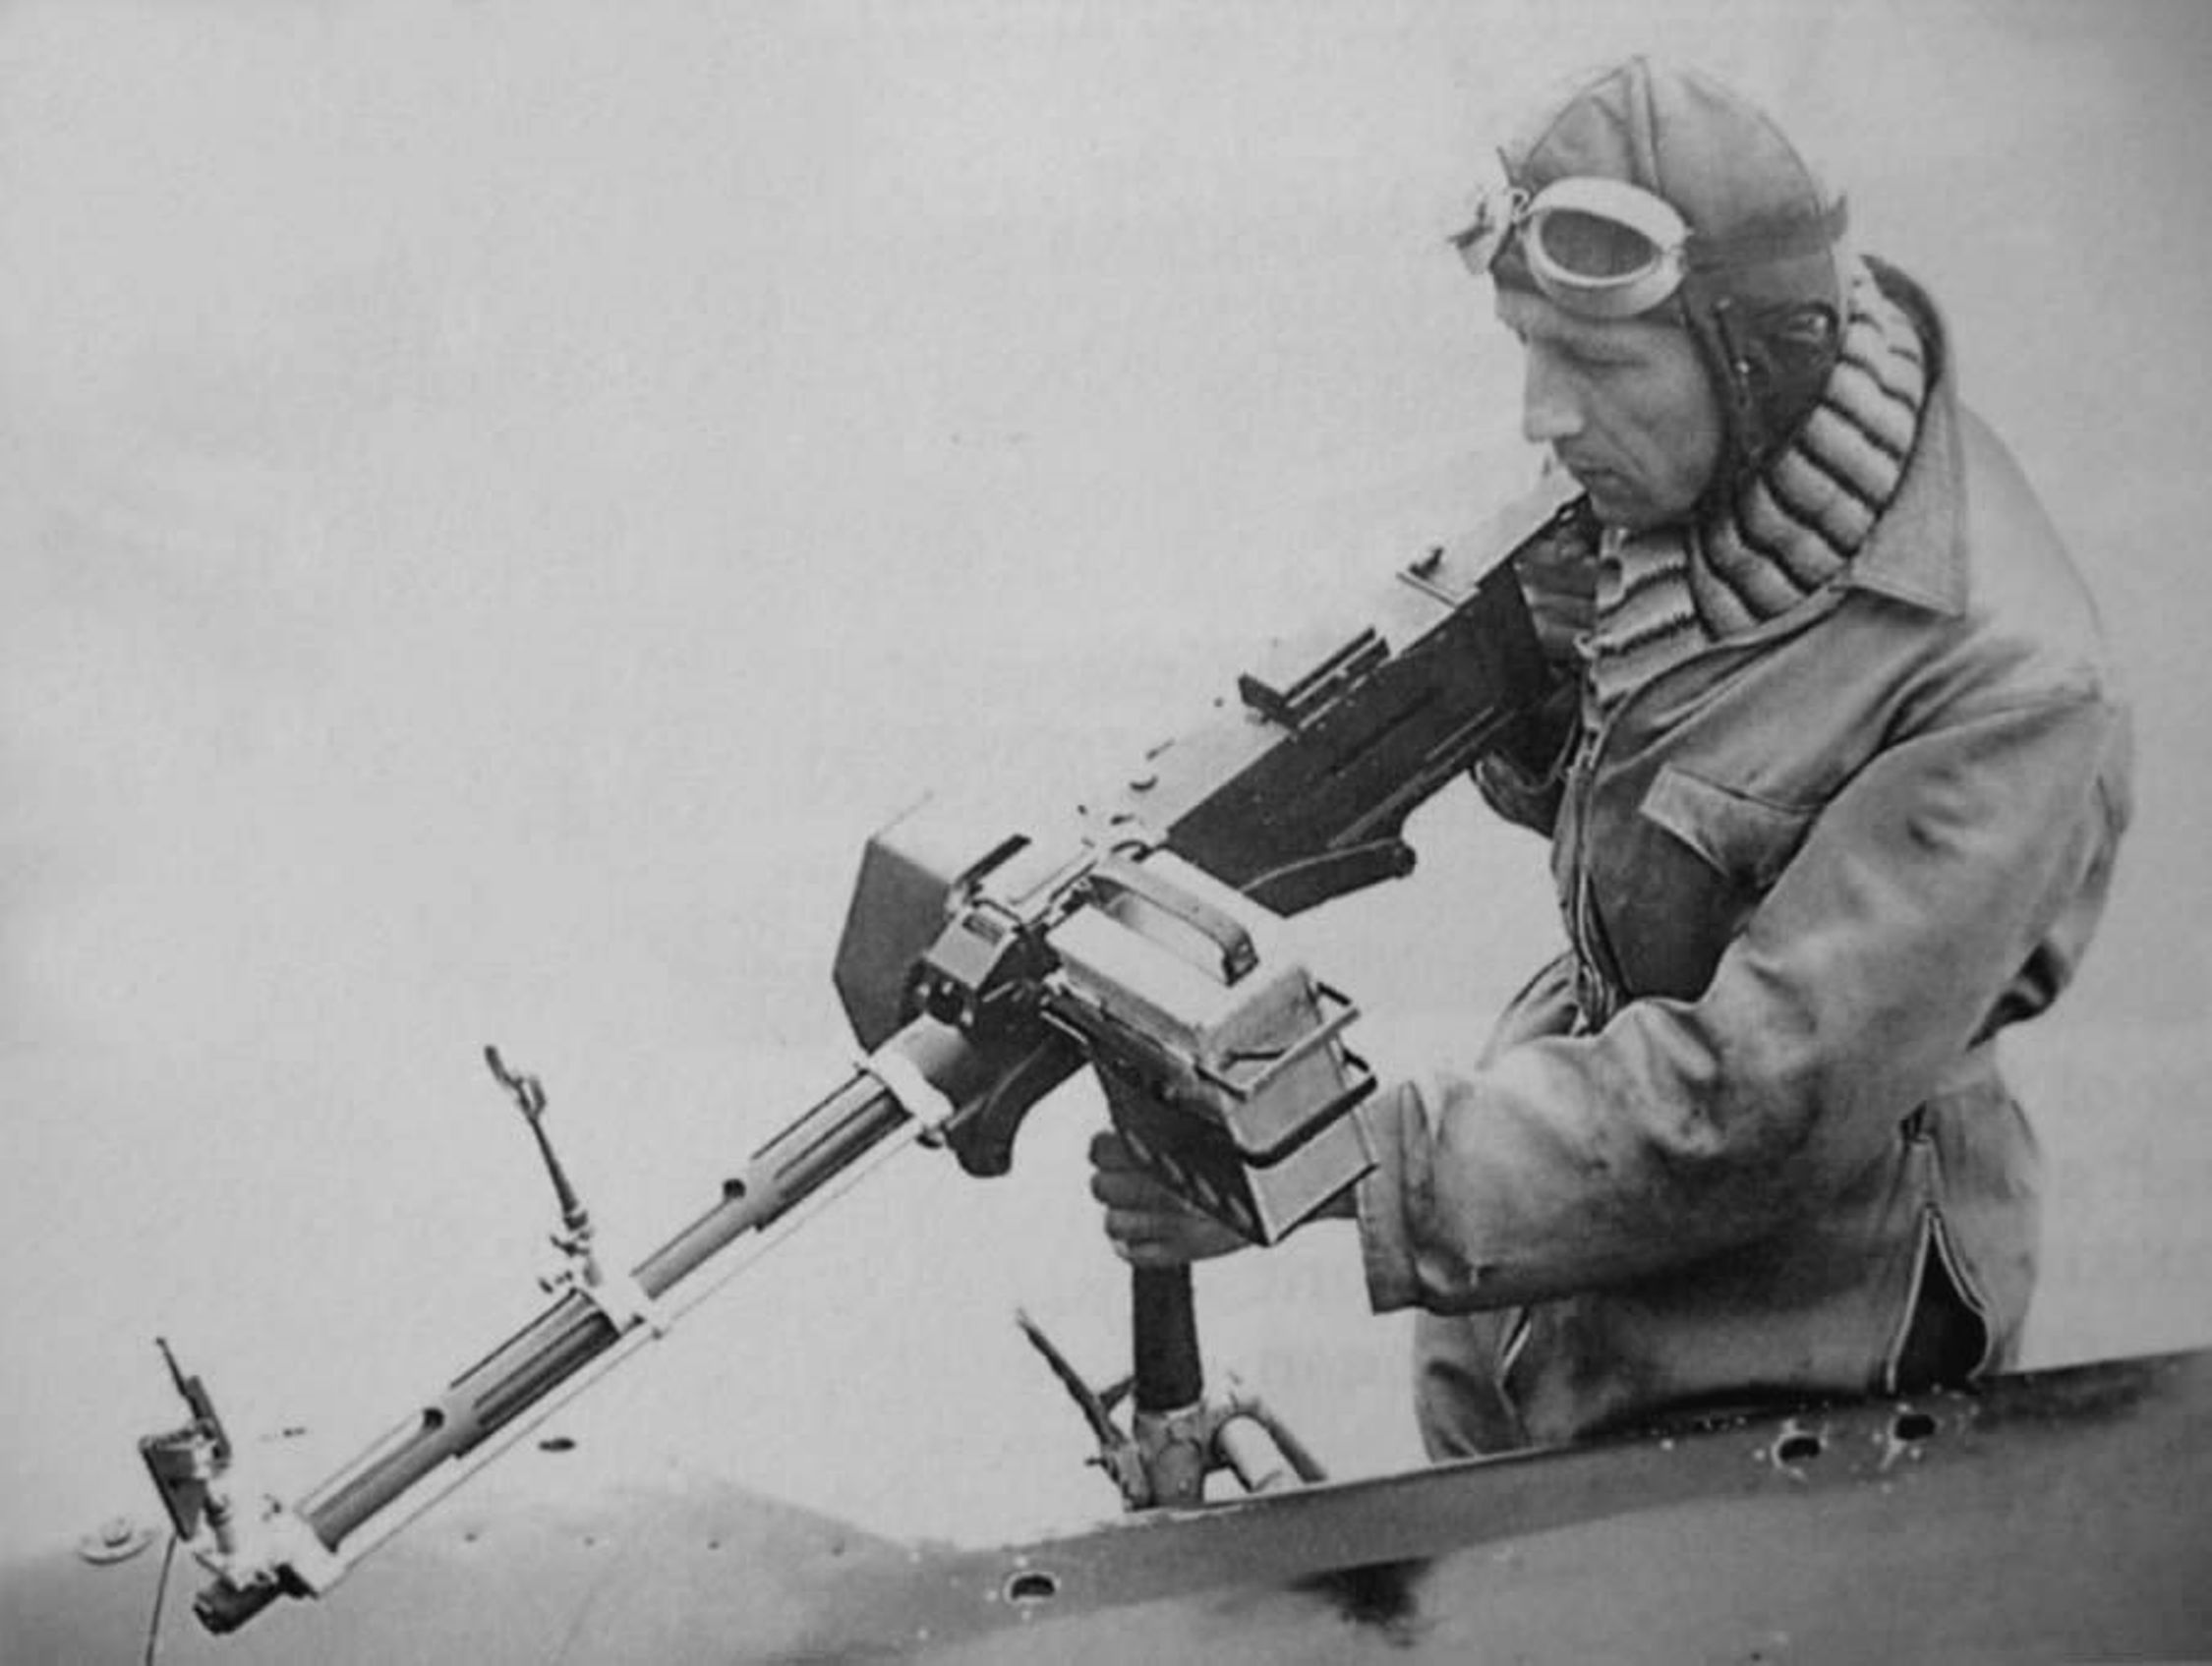 SLIKA 16. Pripadnik RAF s mitraljezom Browning .303 Mk II.jpg